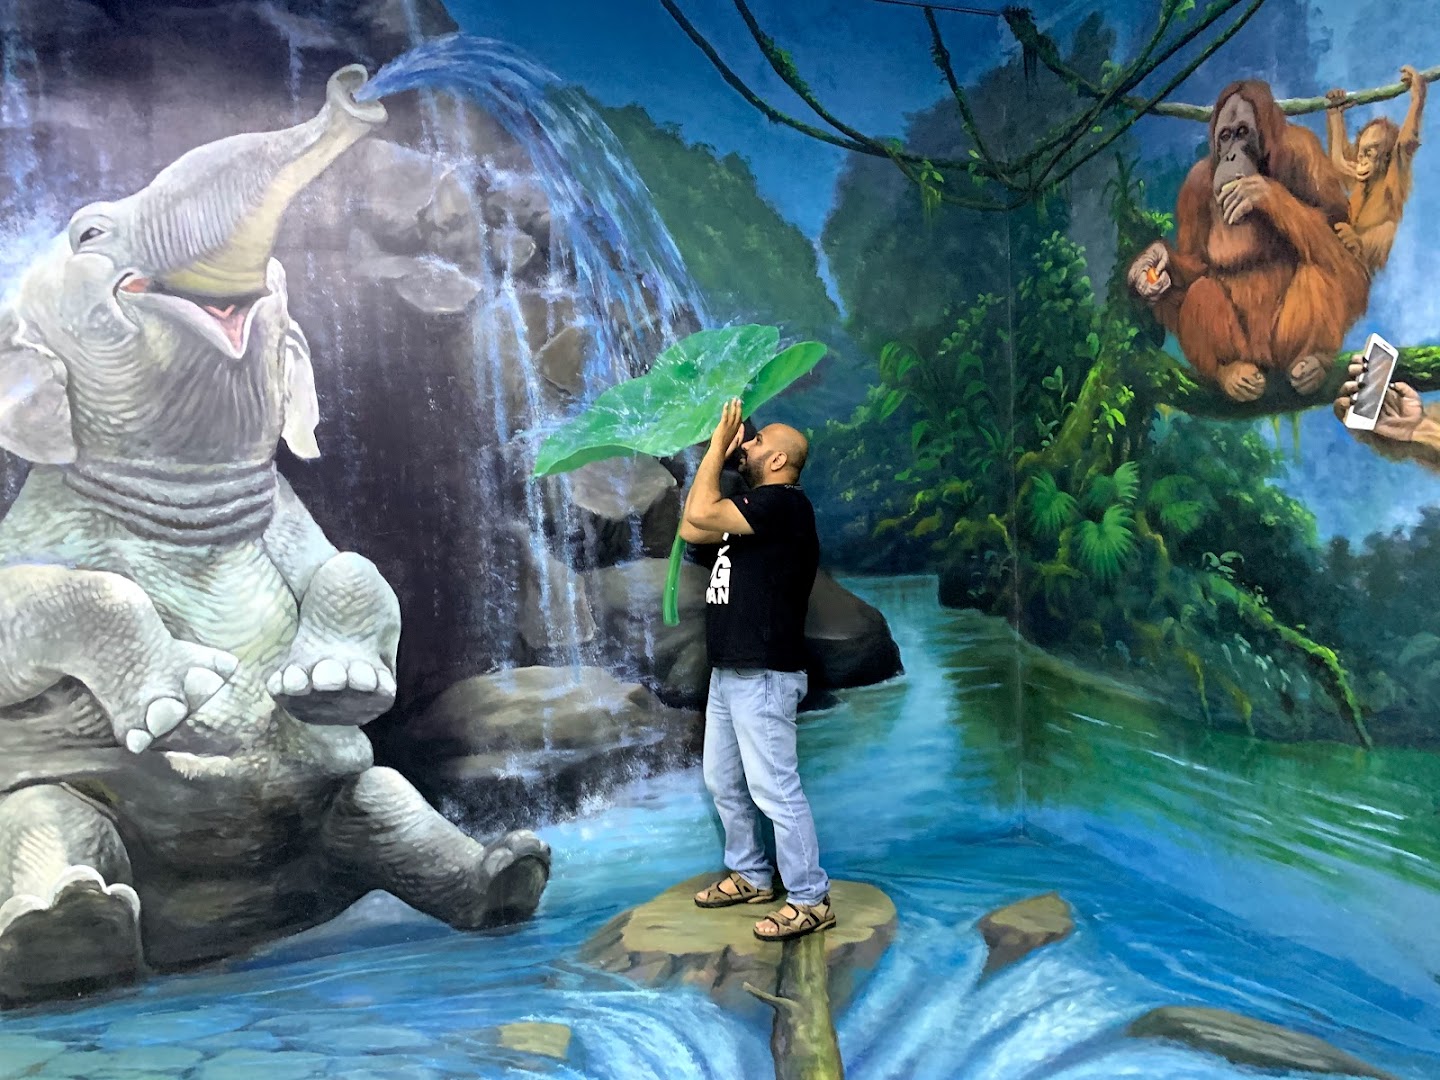 3D World Dubai Trick-Art ‘Selfie’ Museum